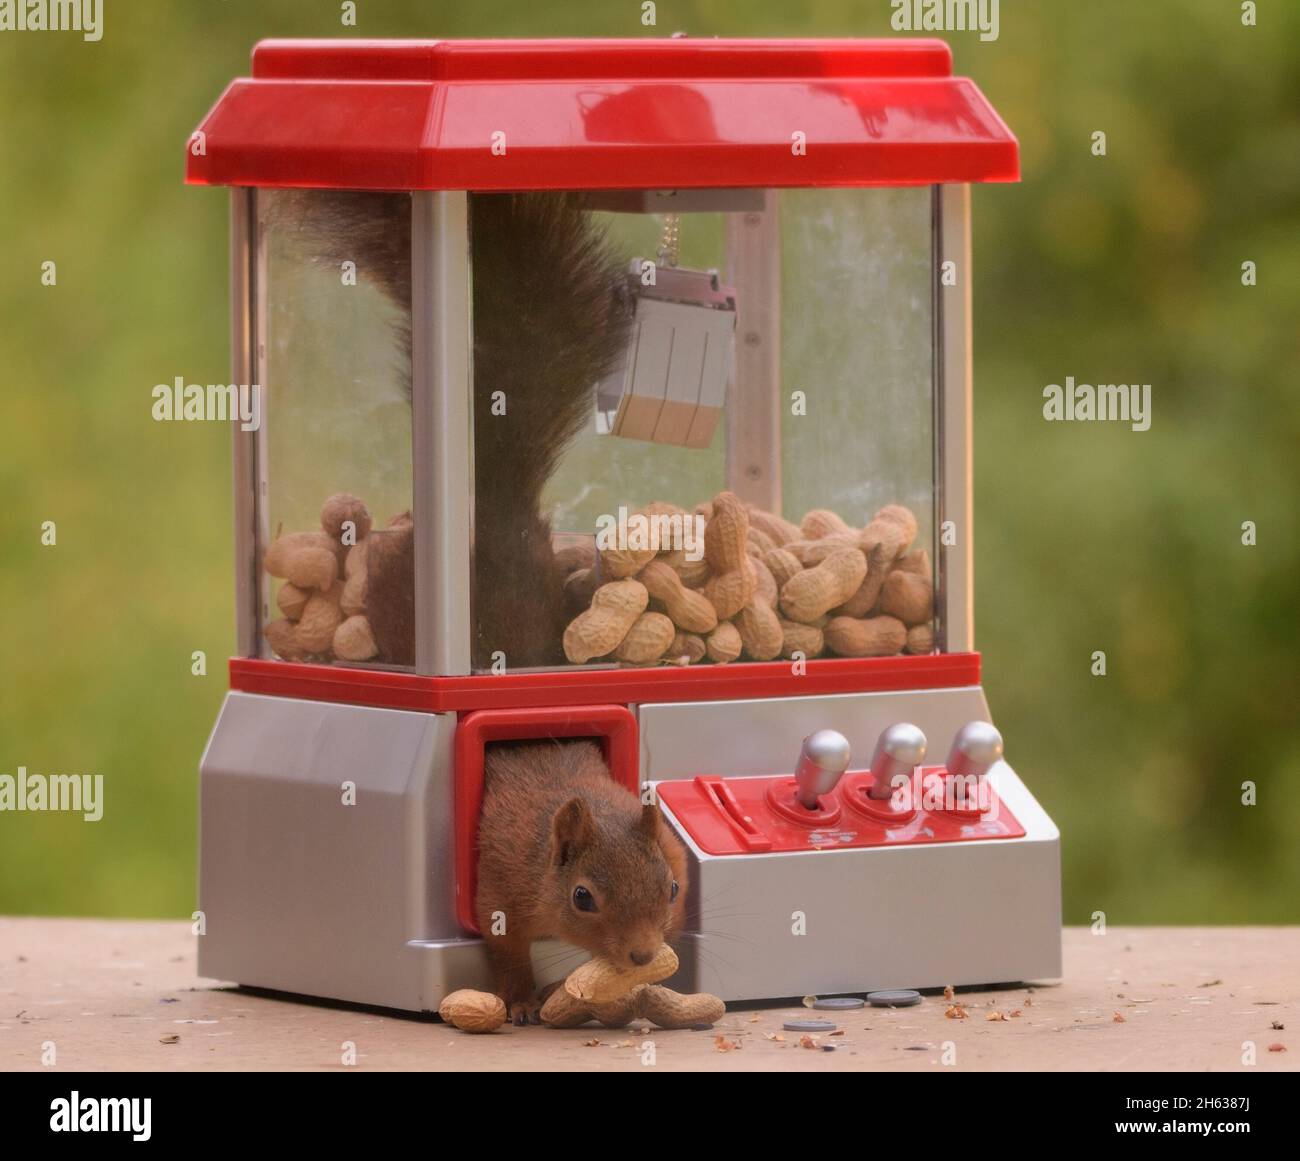 scoiattolo rosso che sale fuori una macchina di gumball Foto Stock